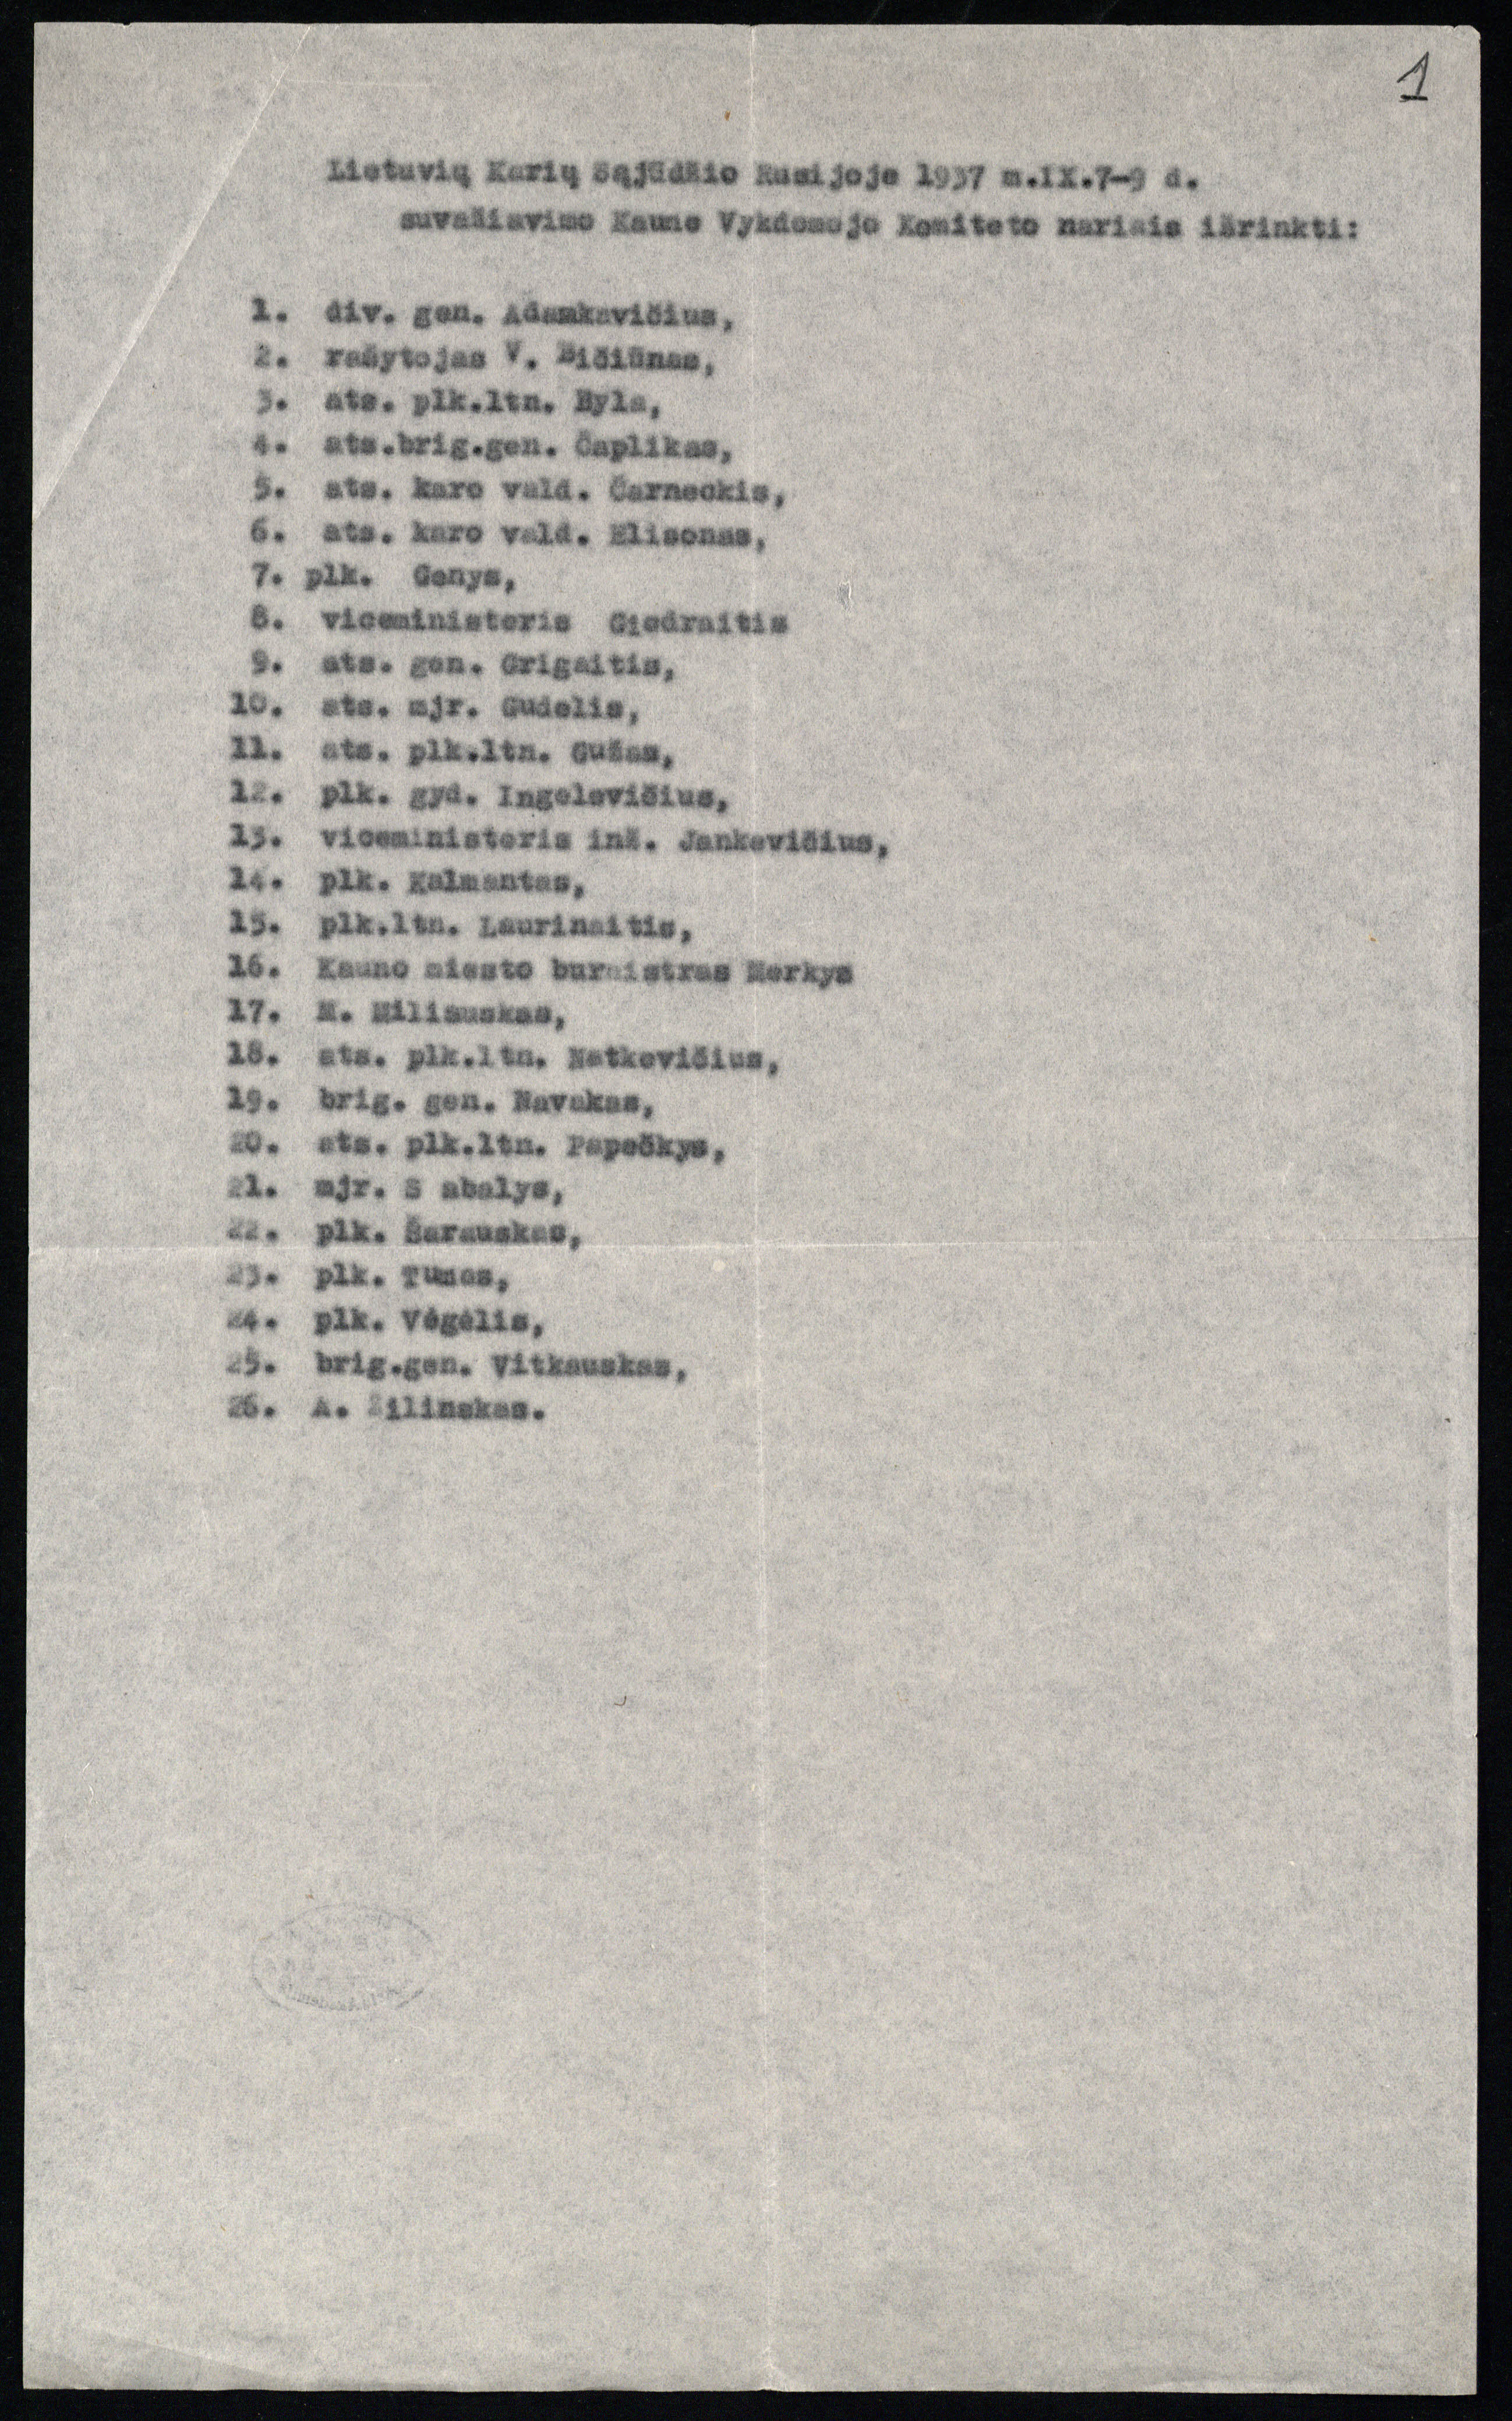 Lietuvių karių sąjūdžio Rusijoje 1937 m. rugsėjo 7–9 d. suvažiavimo Kaune išrinktų Vykdomojo komiteto nariais sąrašas